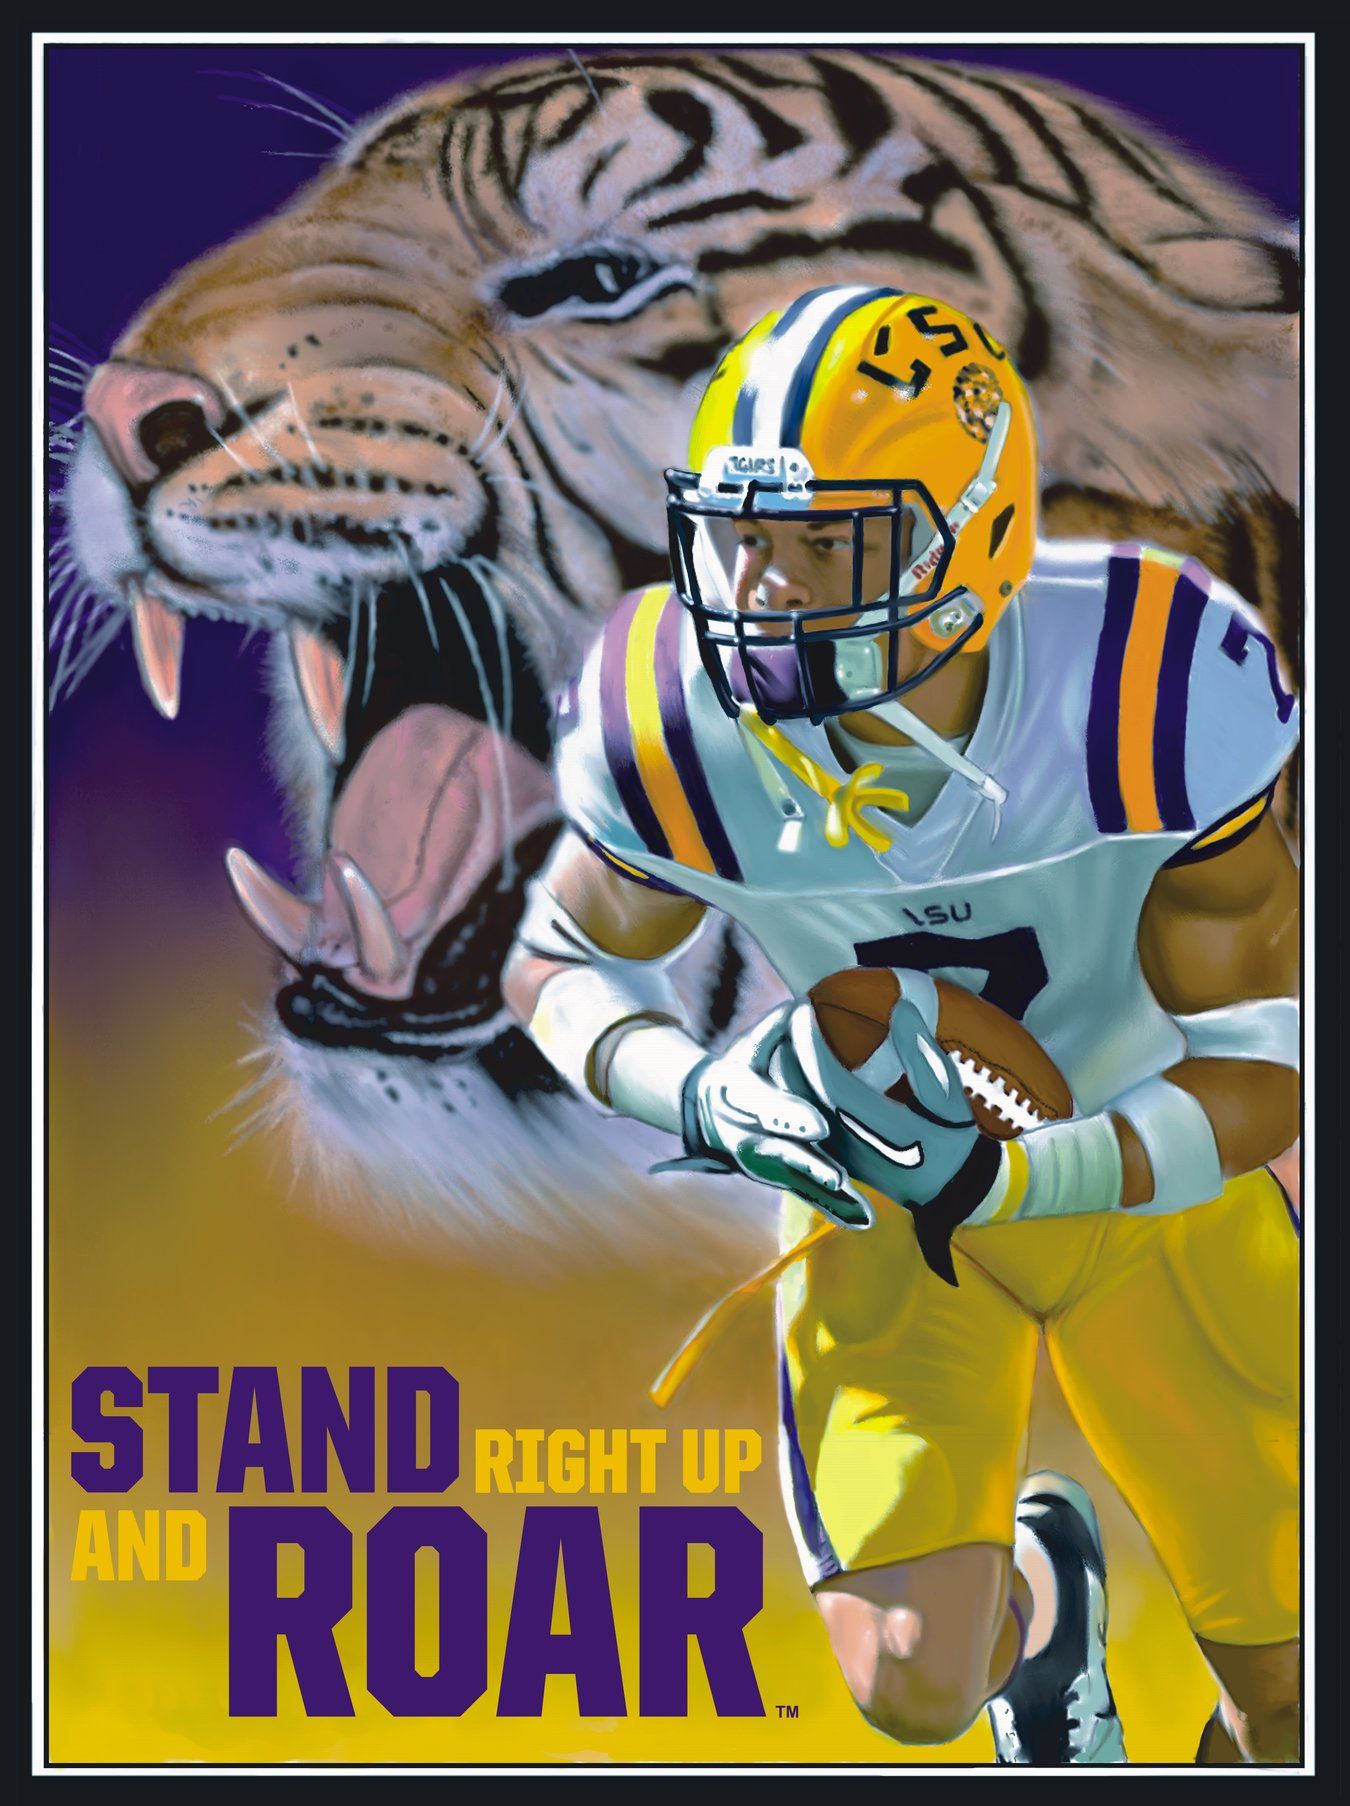 Lsu Tigers Poster Tyrann Mathieu Roar By Team Spirit - Sprint Football , HD Wallpaper & Backgrounds